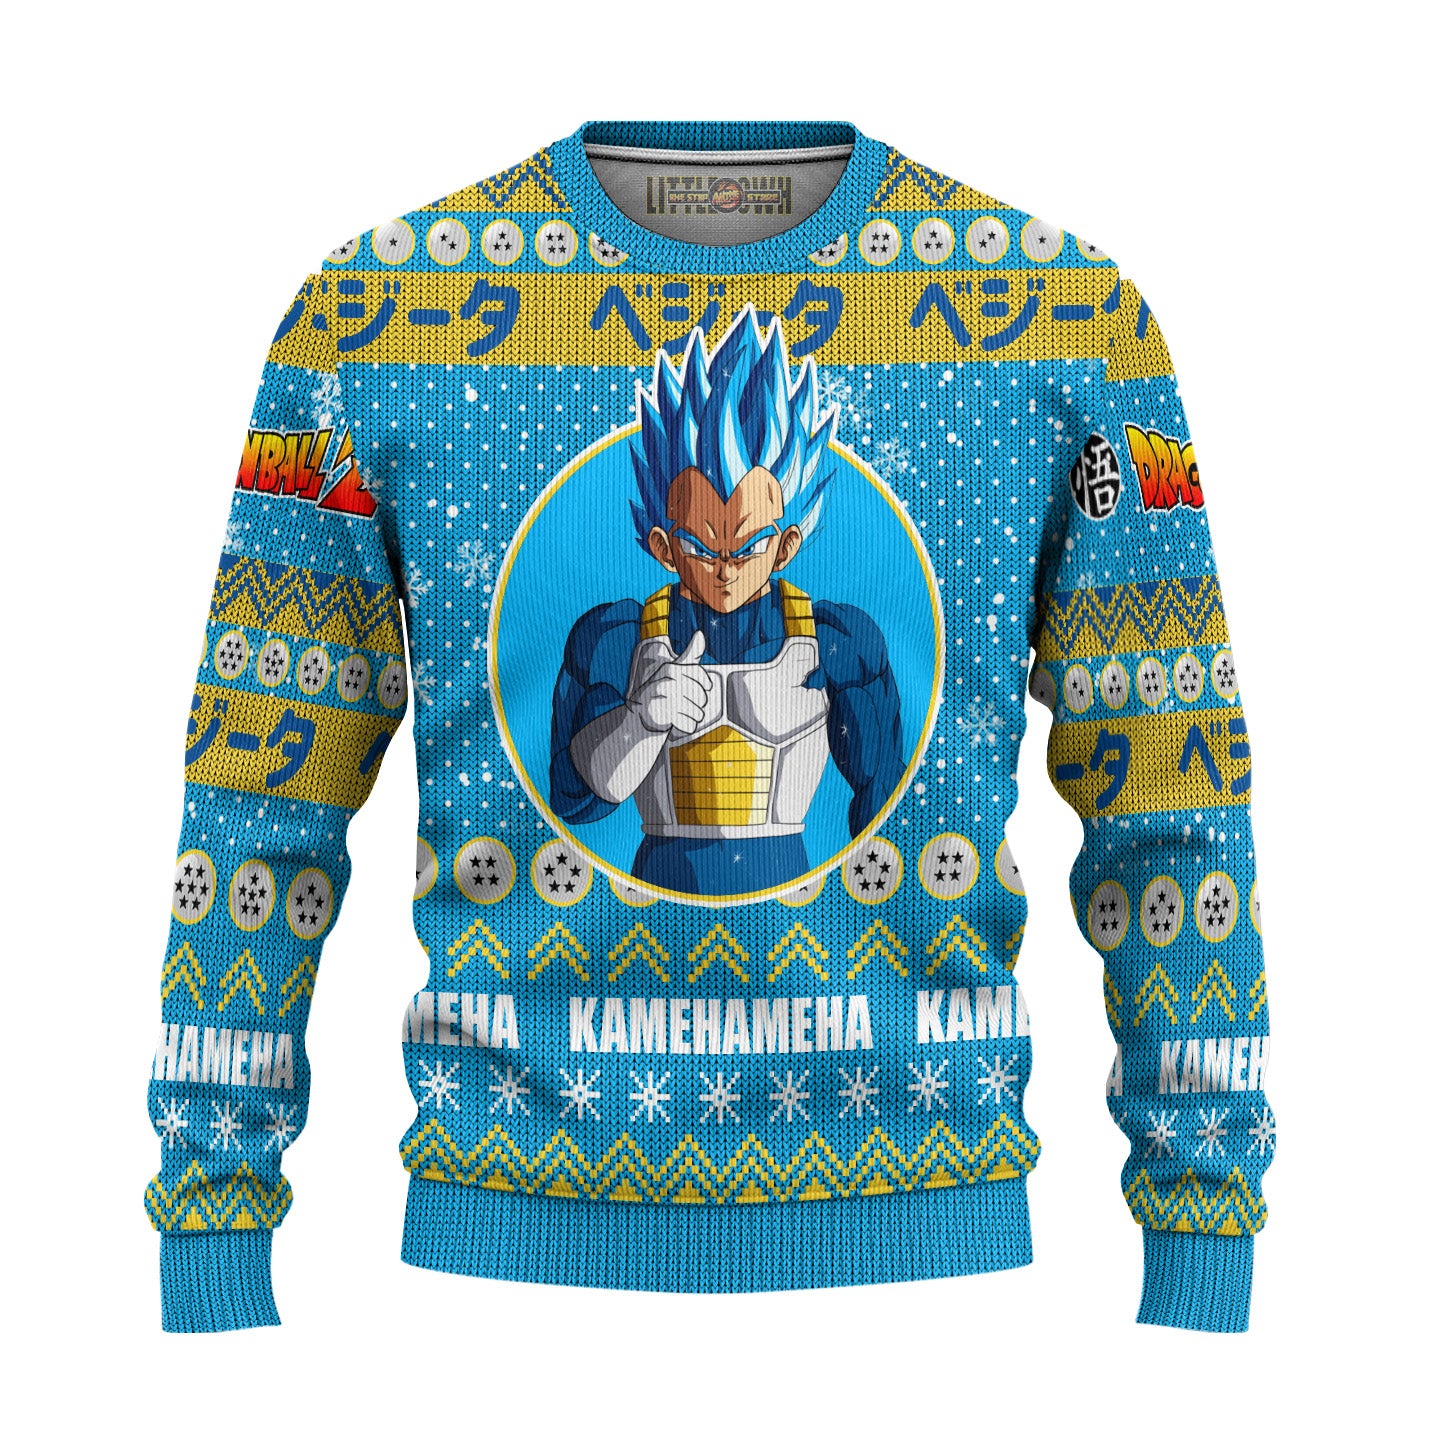 Vegeta Anime Ugly Christmas Sweater Dragon Ball Z New Design